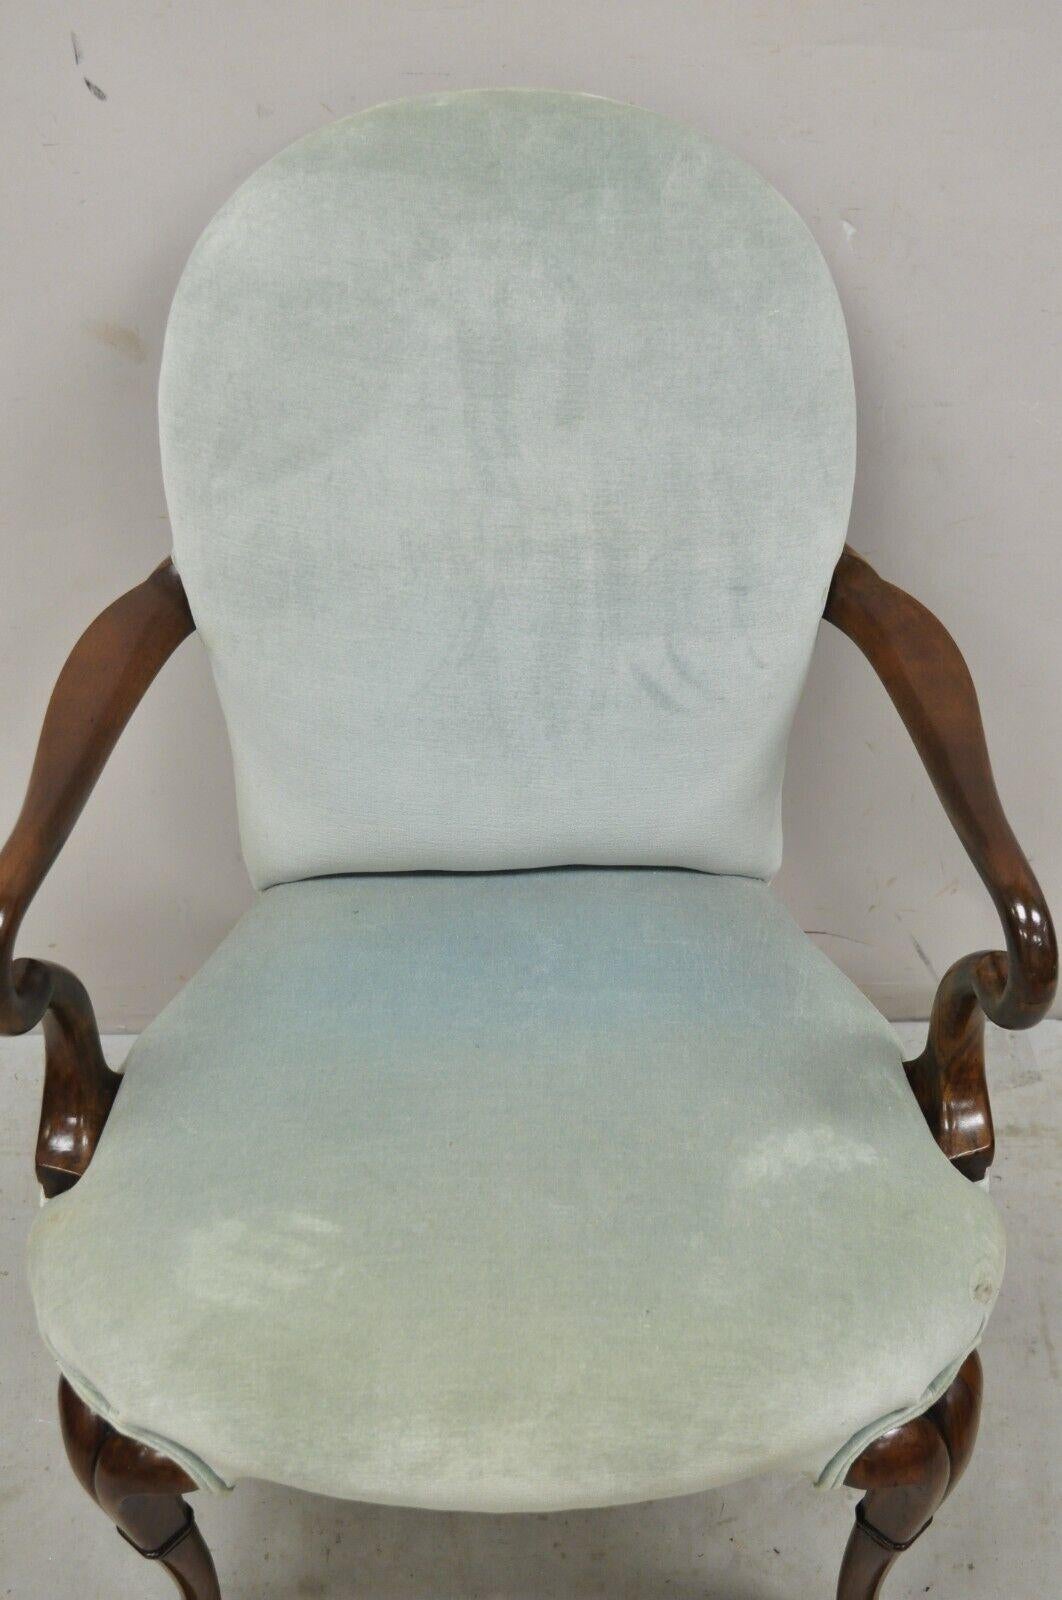 queen anne chair antique